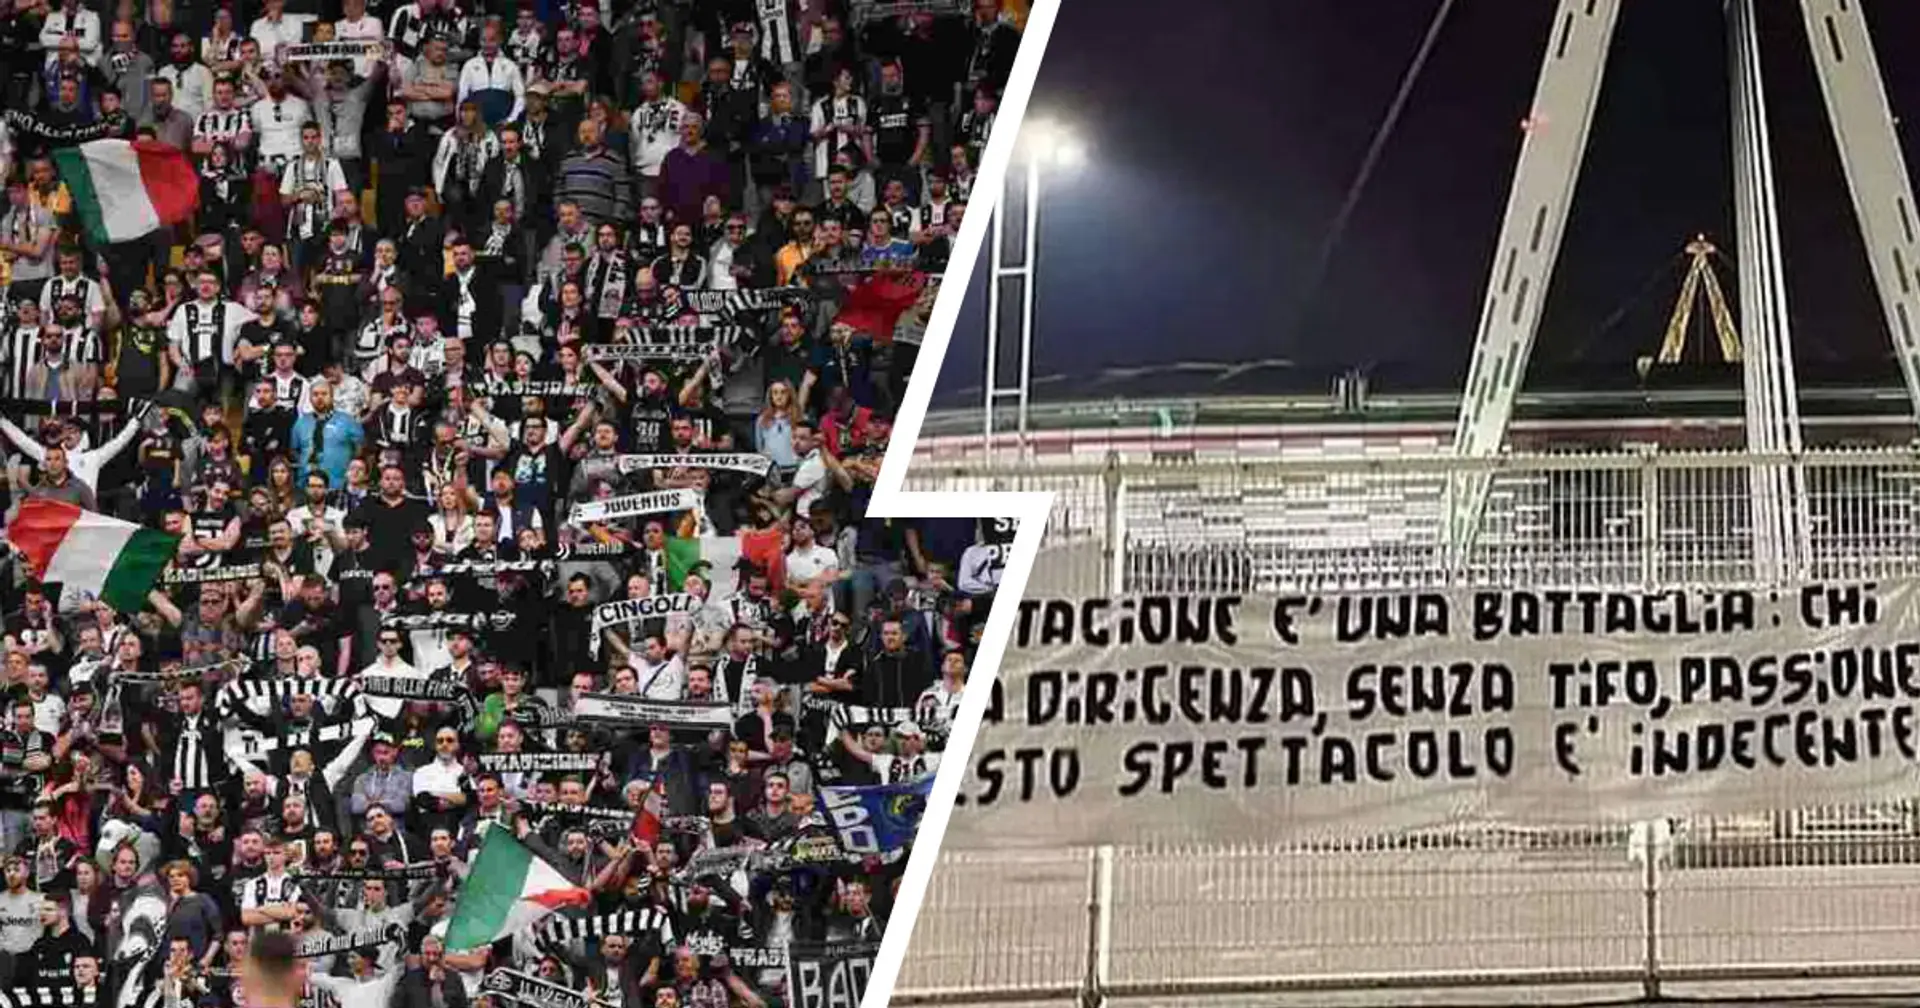 "Questo spettacolo è indecente", lo striscione della Curva Sud della Juventus contro dirigenza e squadra bianconera